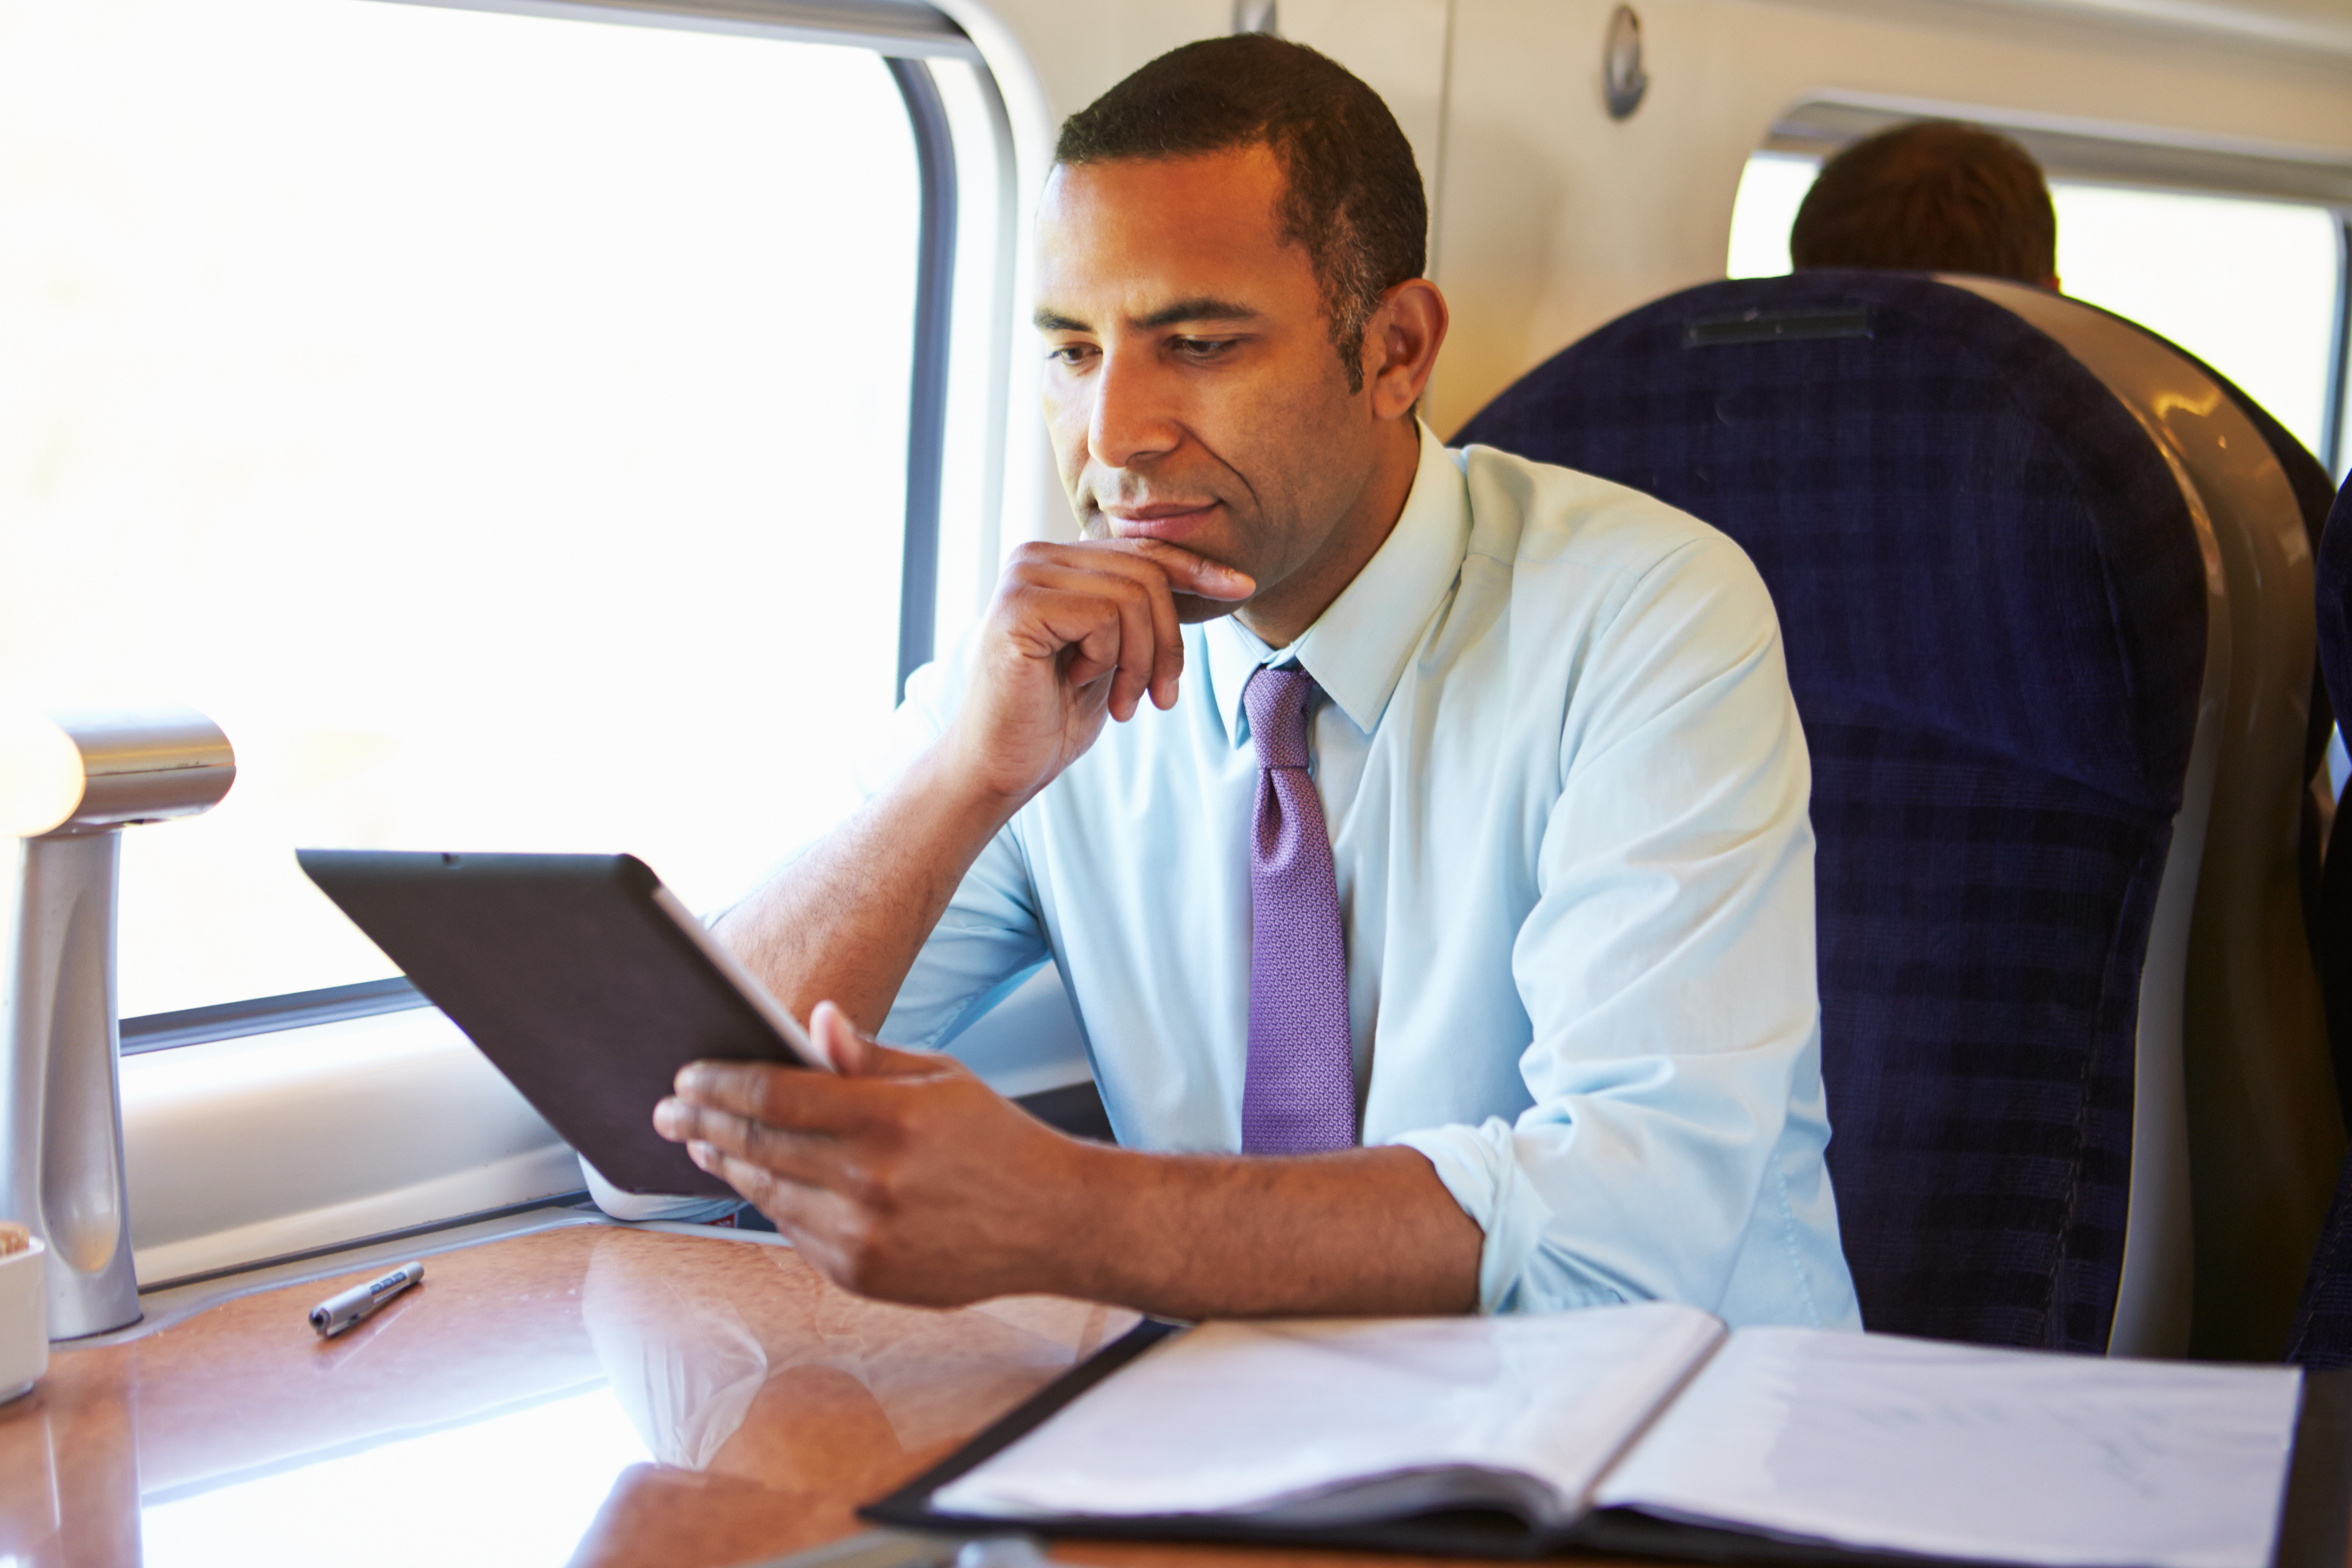 Un homme assis sur un siège côté fenêtre dans un train | Source : Shutterstock